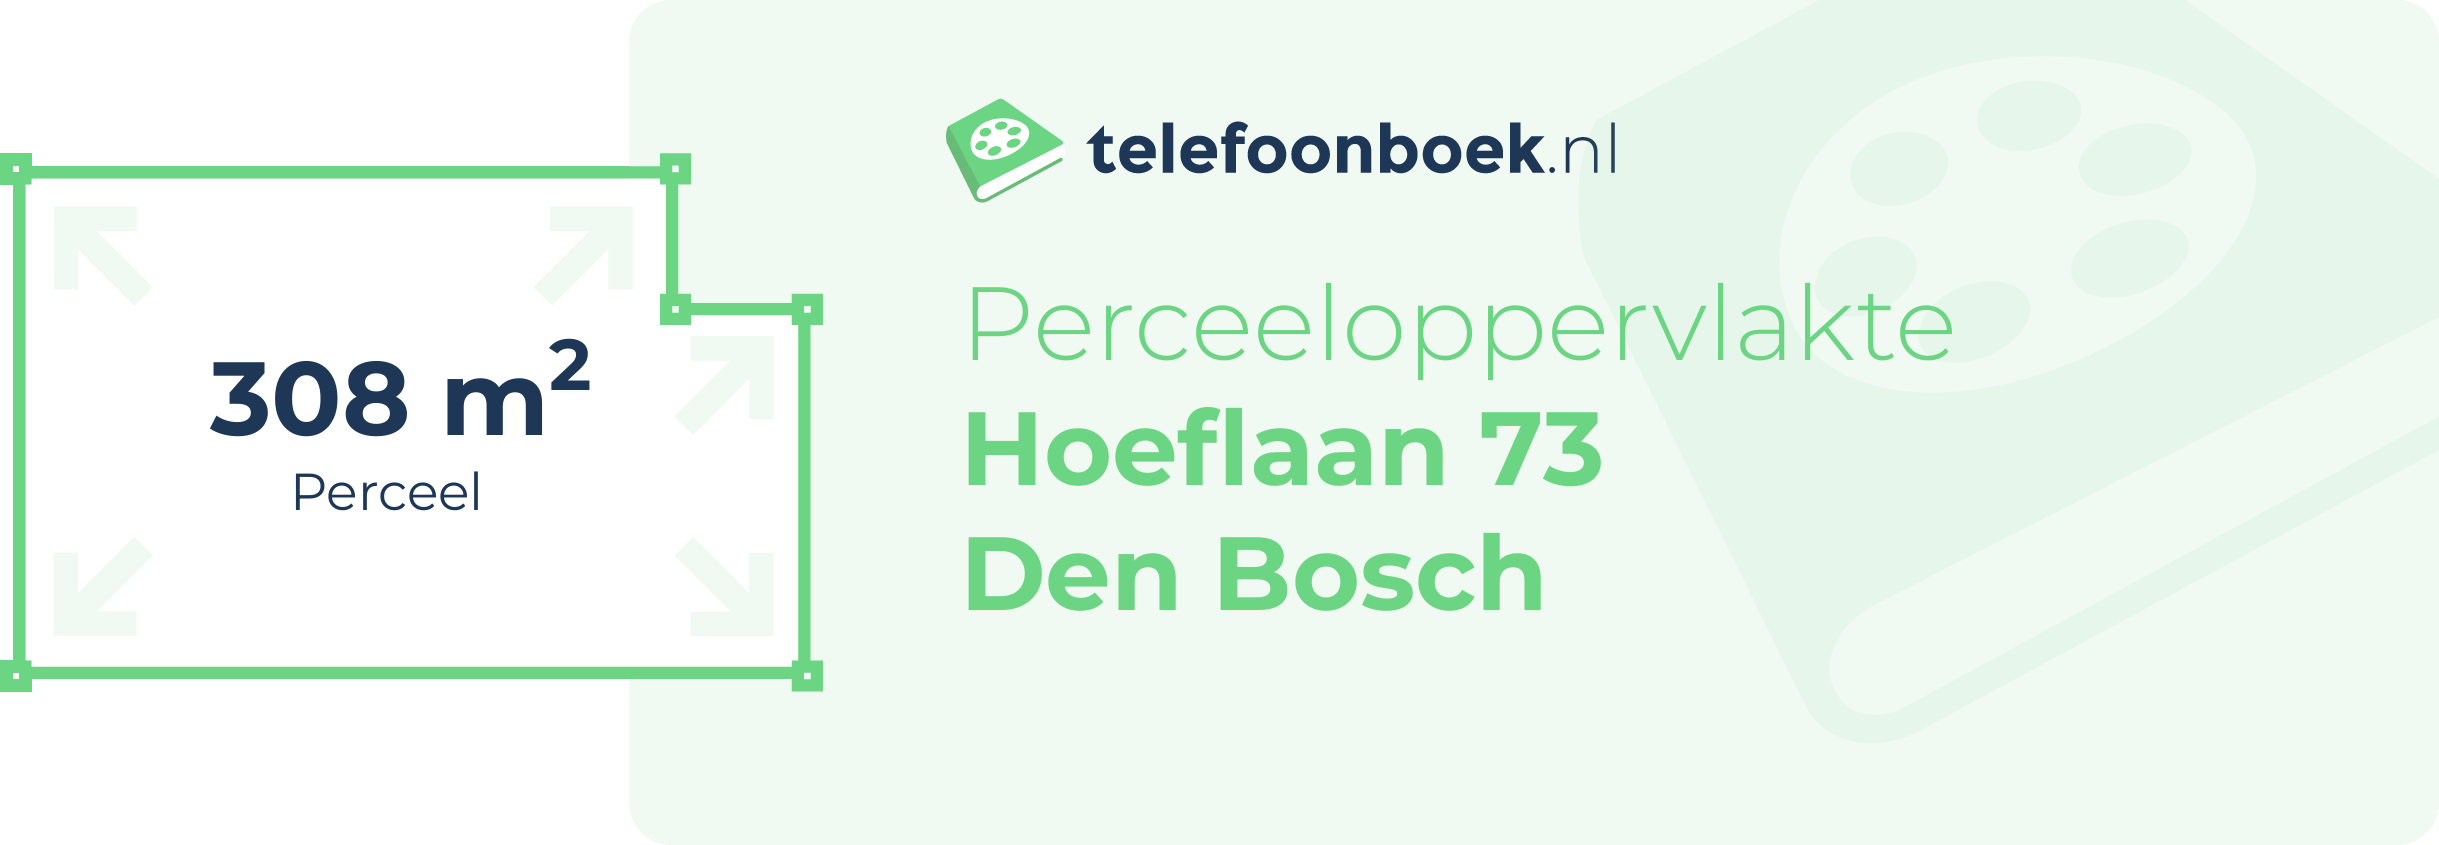 Perceeloppervlakte Hoeflaan 73 Den Bosch